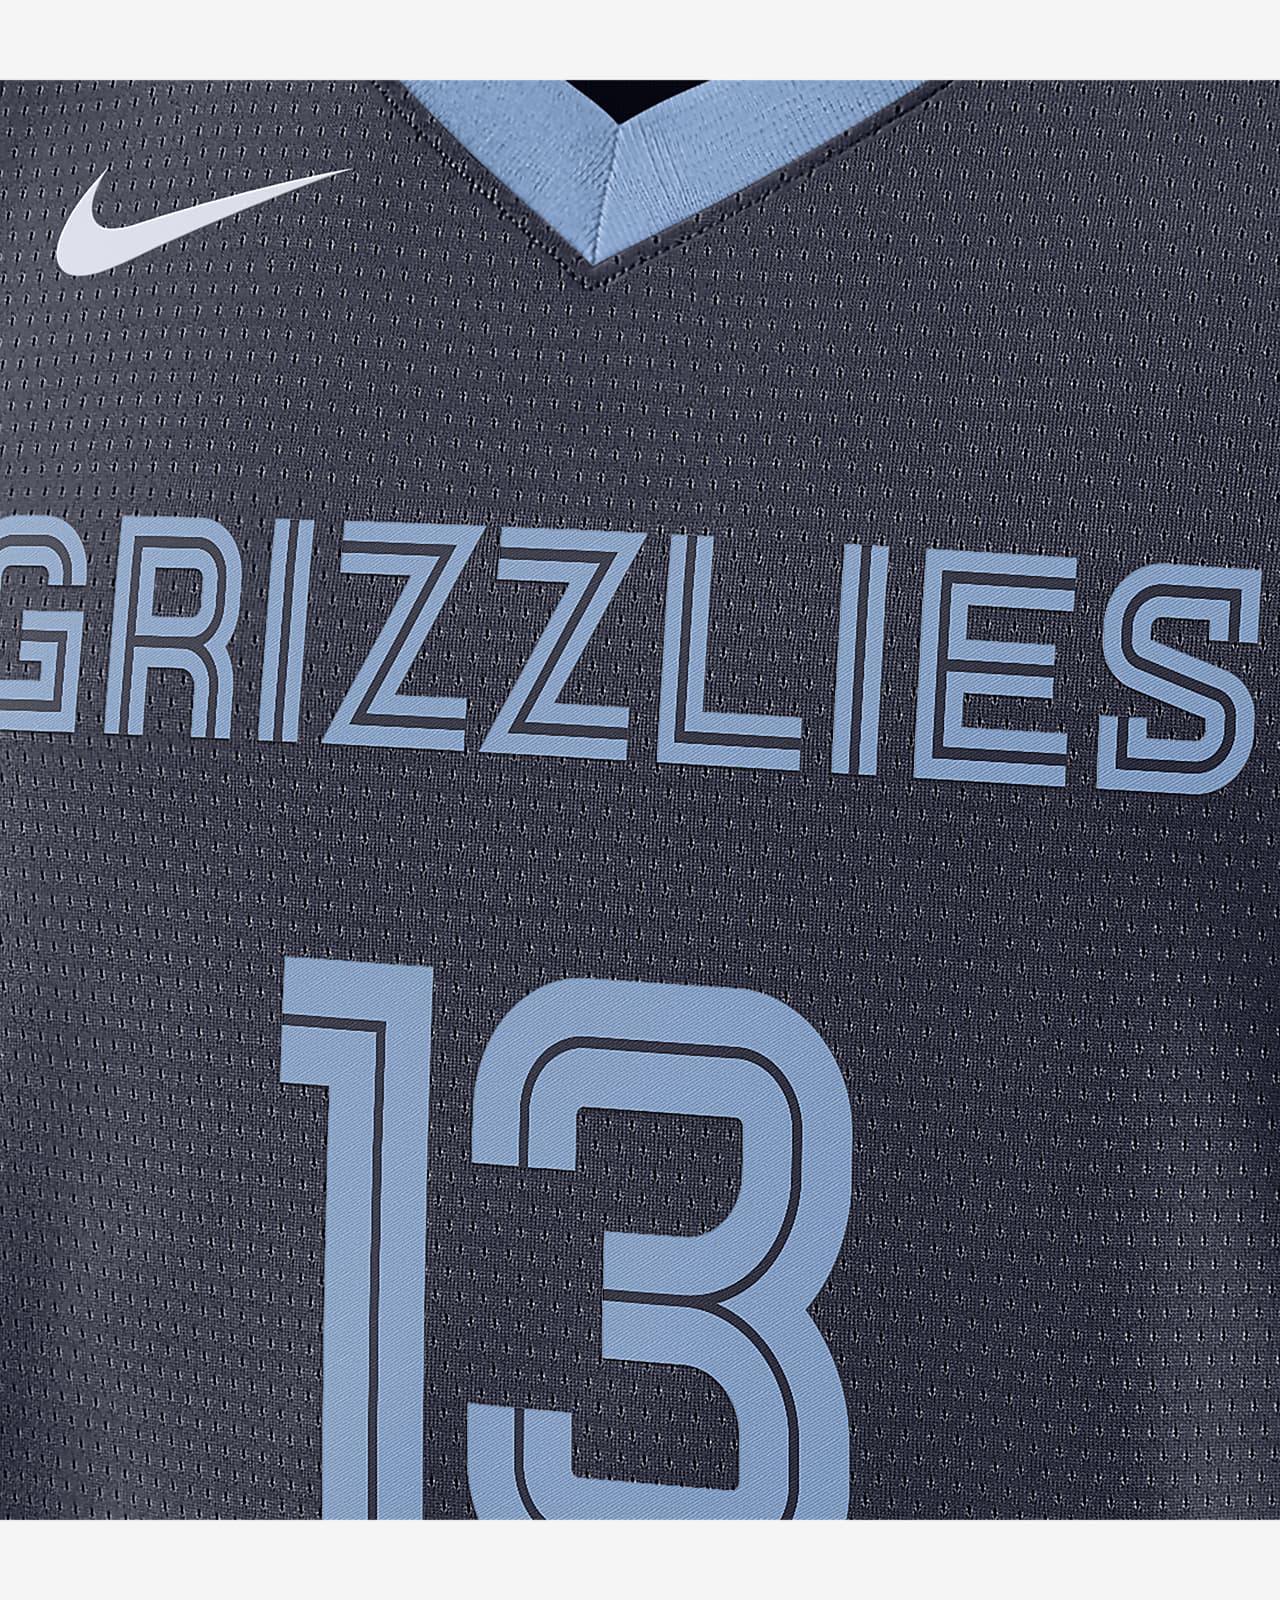 Memphis Grizzlies Icon Edition 2022/23 Nike Dri-FIT NBA Swingman Jersey.